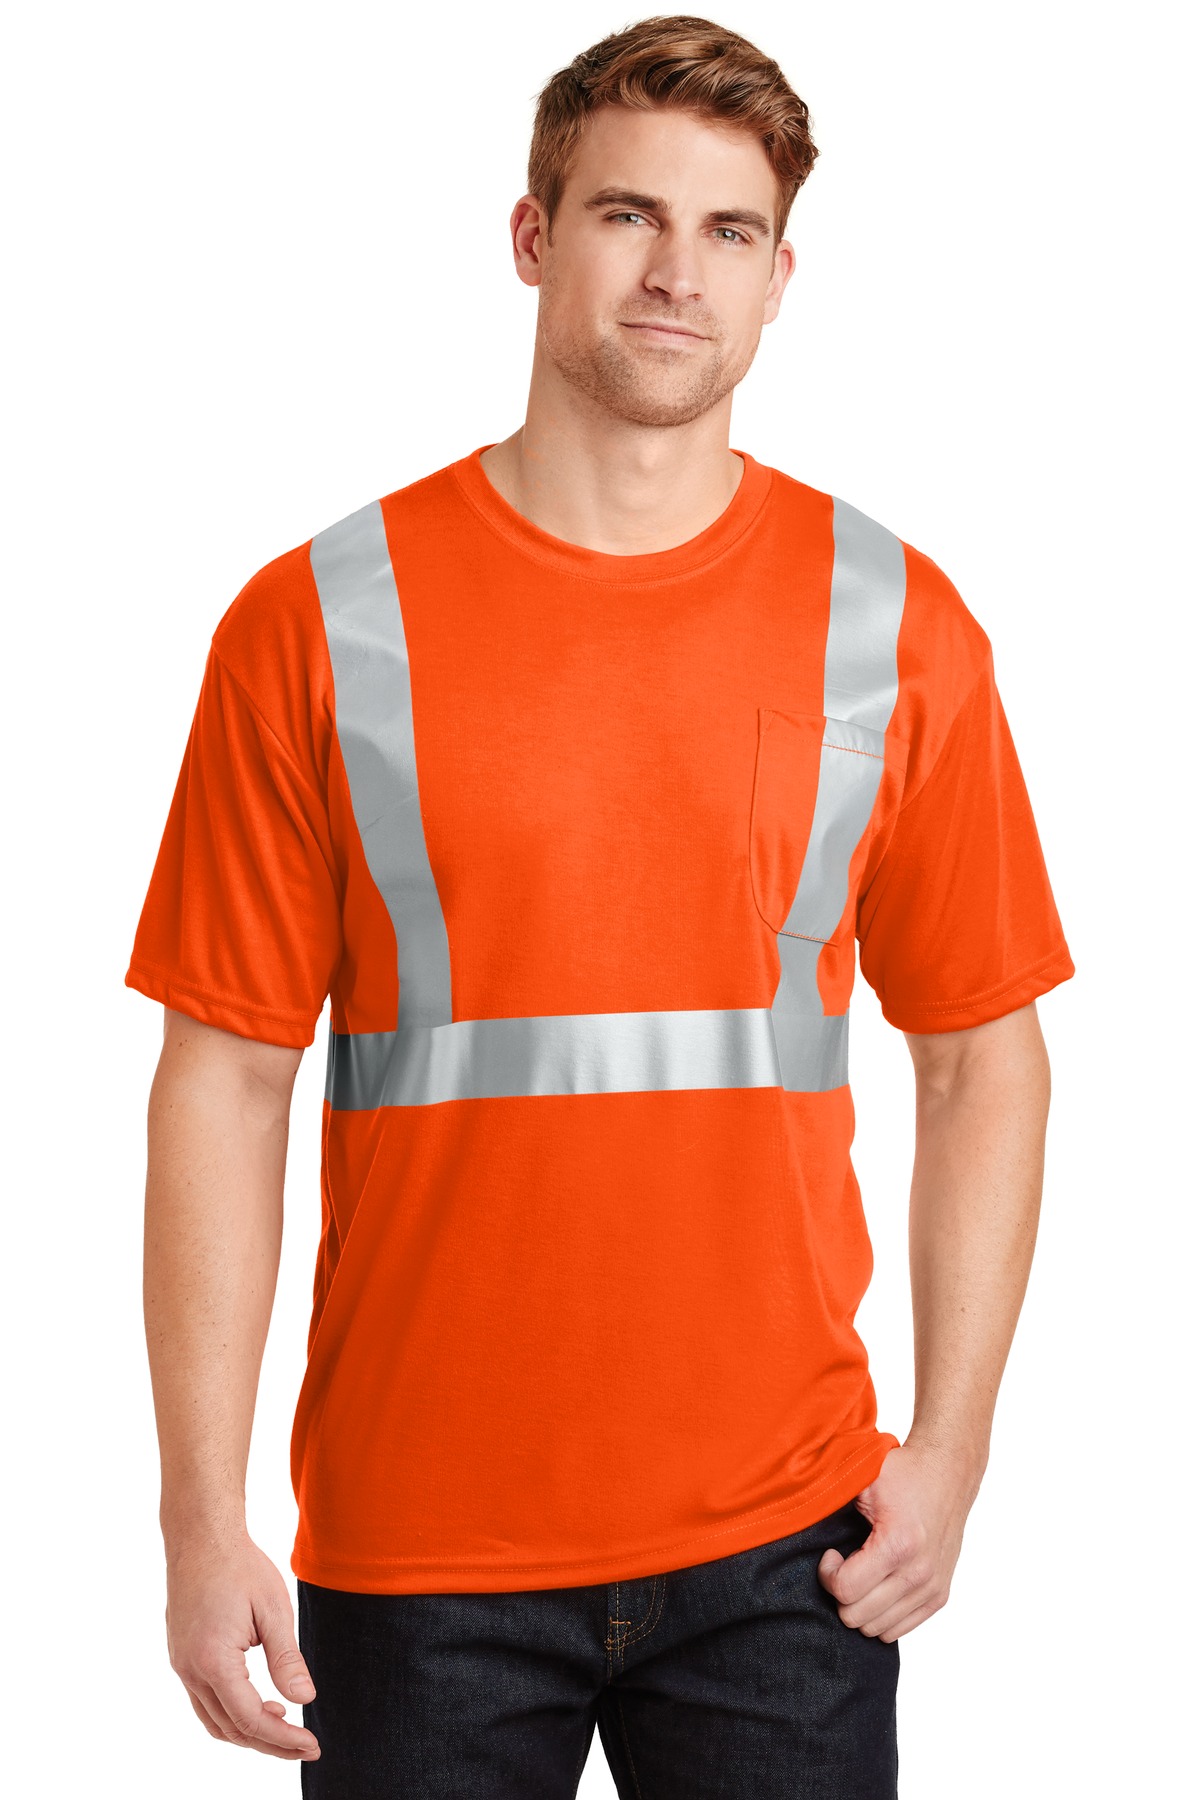 CornerStone - ANSI 107 Class 2 Safety T-Shirt.  CS401